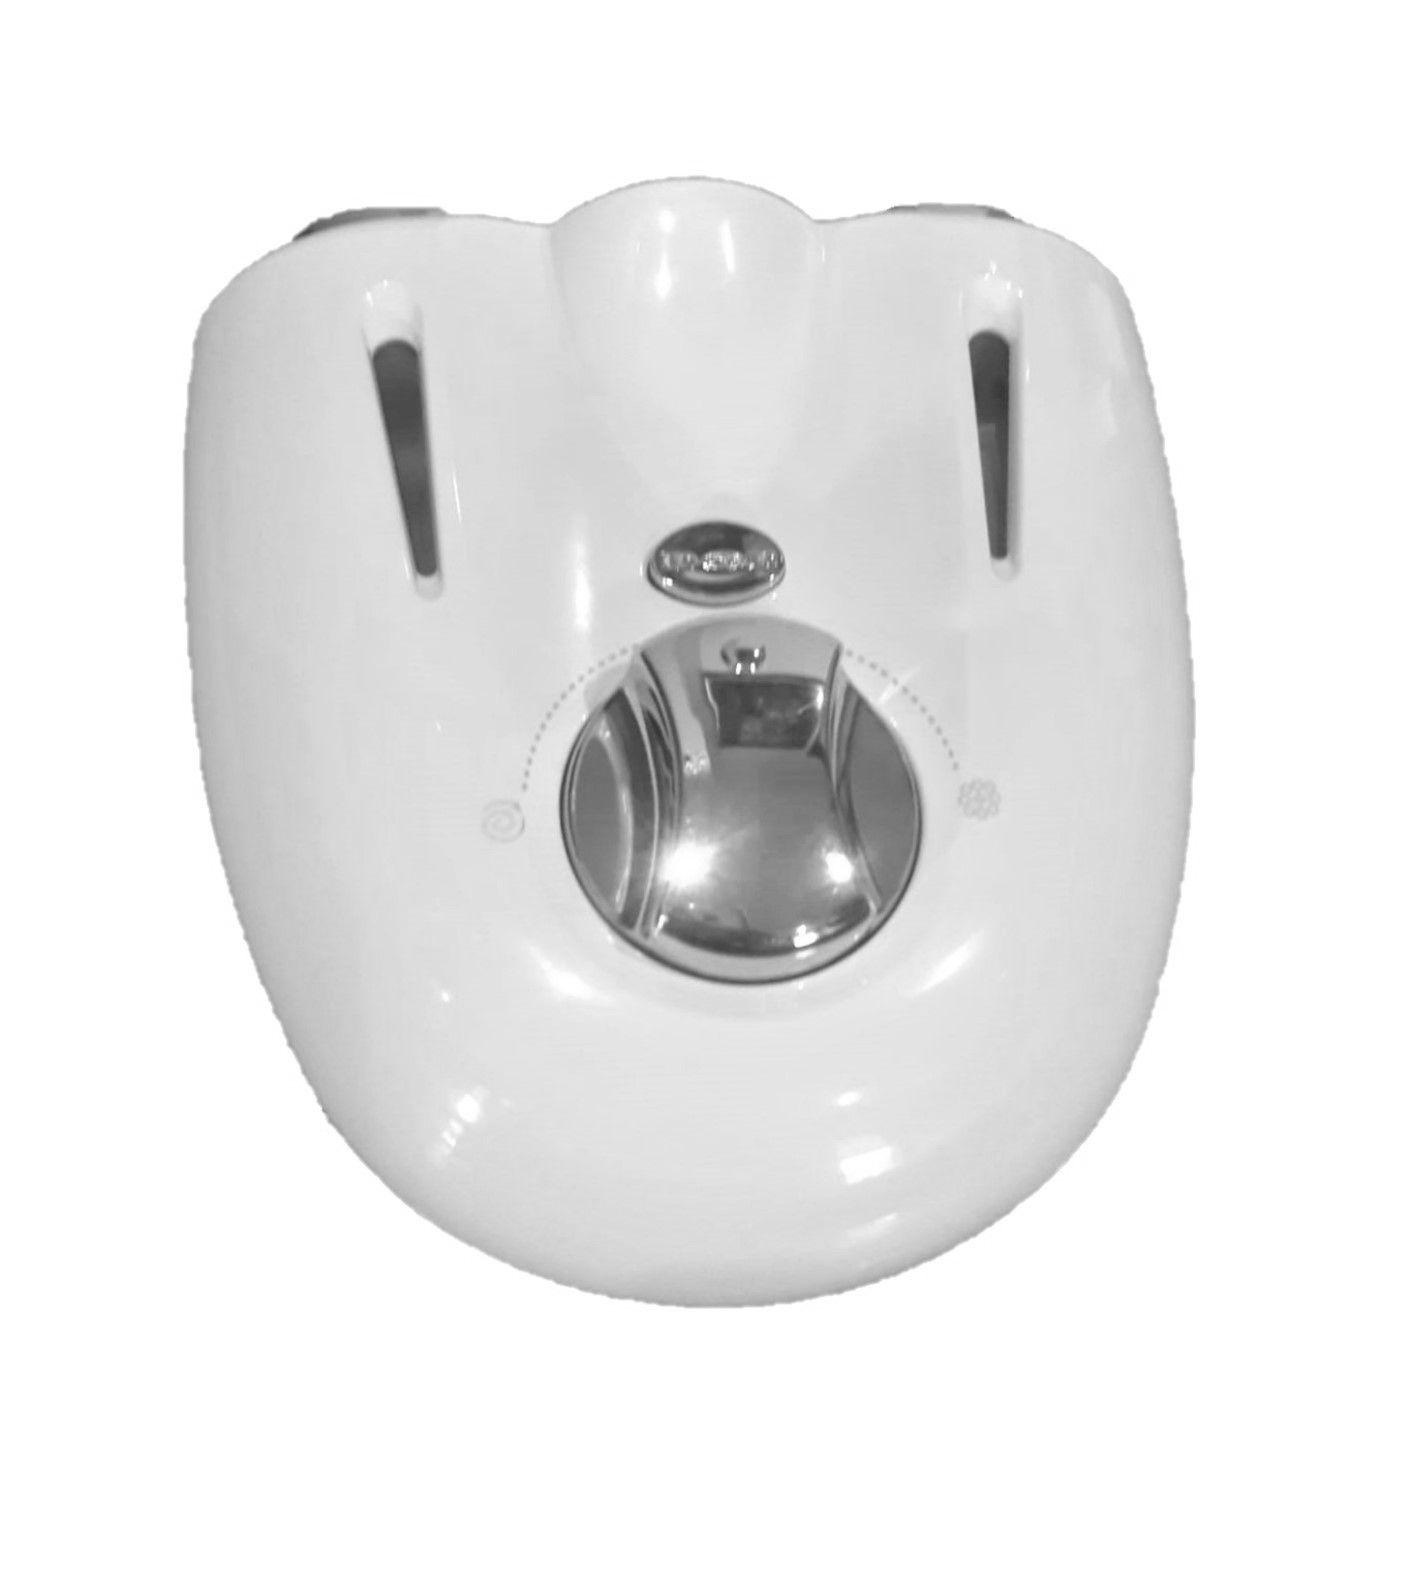 Idor Myfive Universal Threeway White/07 emolsionatore multiplo per vasca - doccia bianco con mensole e pulsantiera cromata